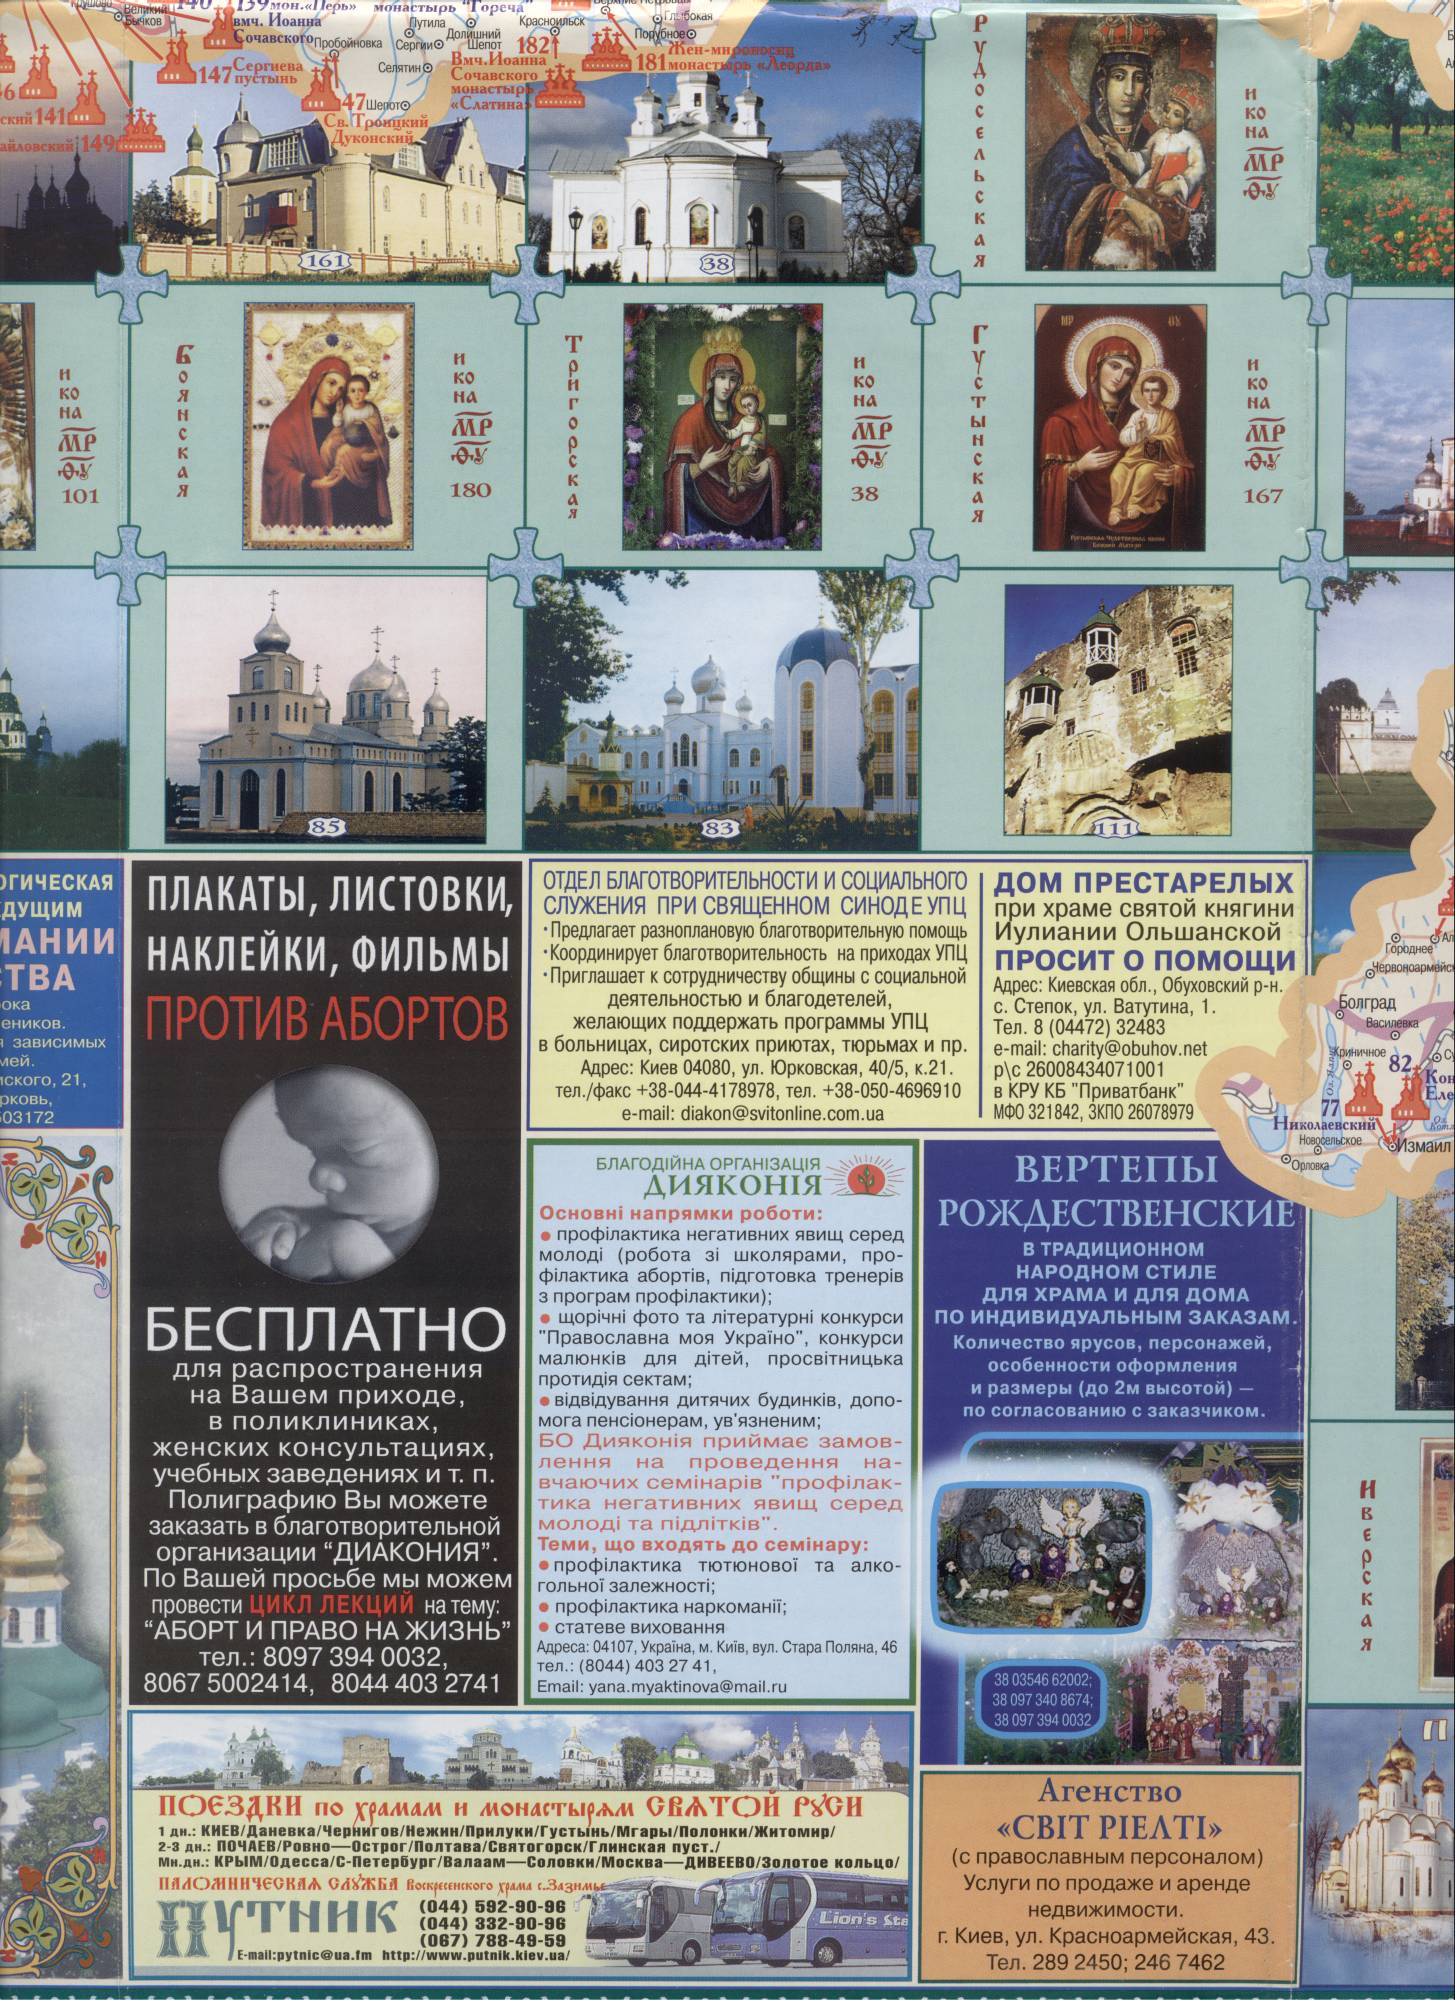 Orthodox Monasteries on the map of Ukraine